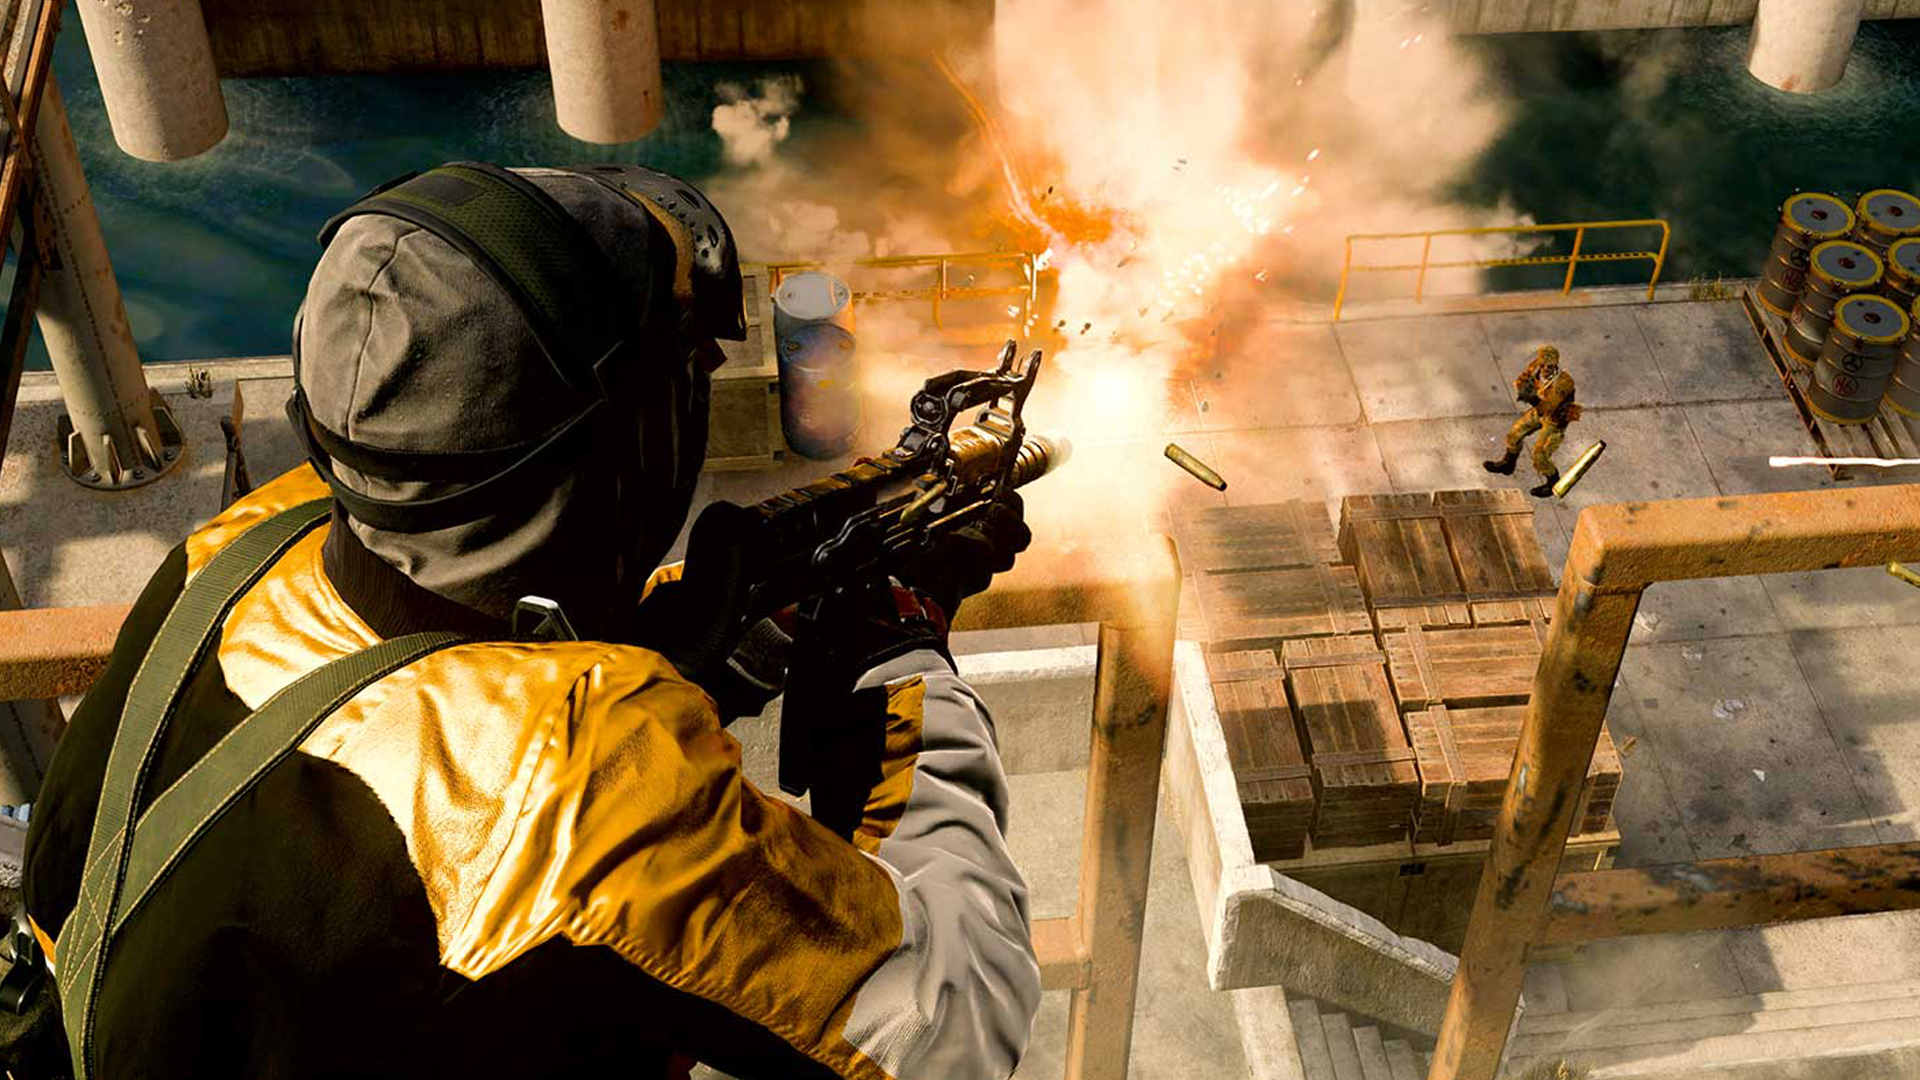 Battlefield 4 server boosted: player resurgence after Battlefield